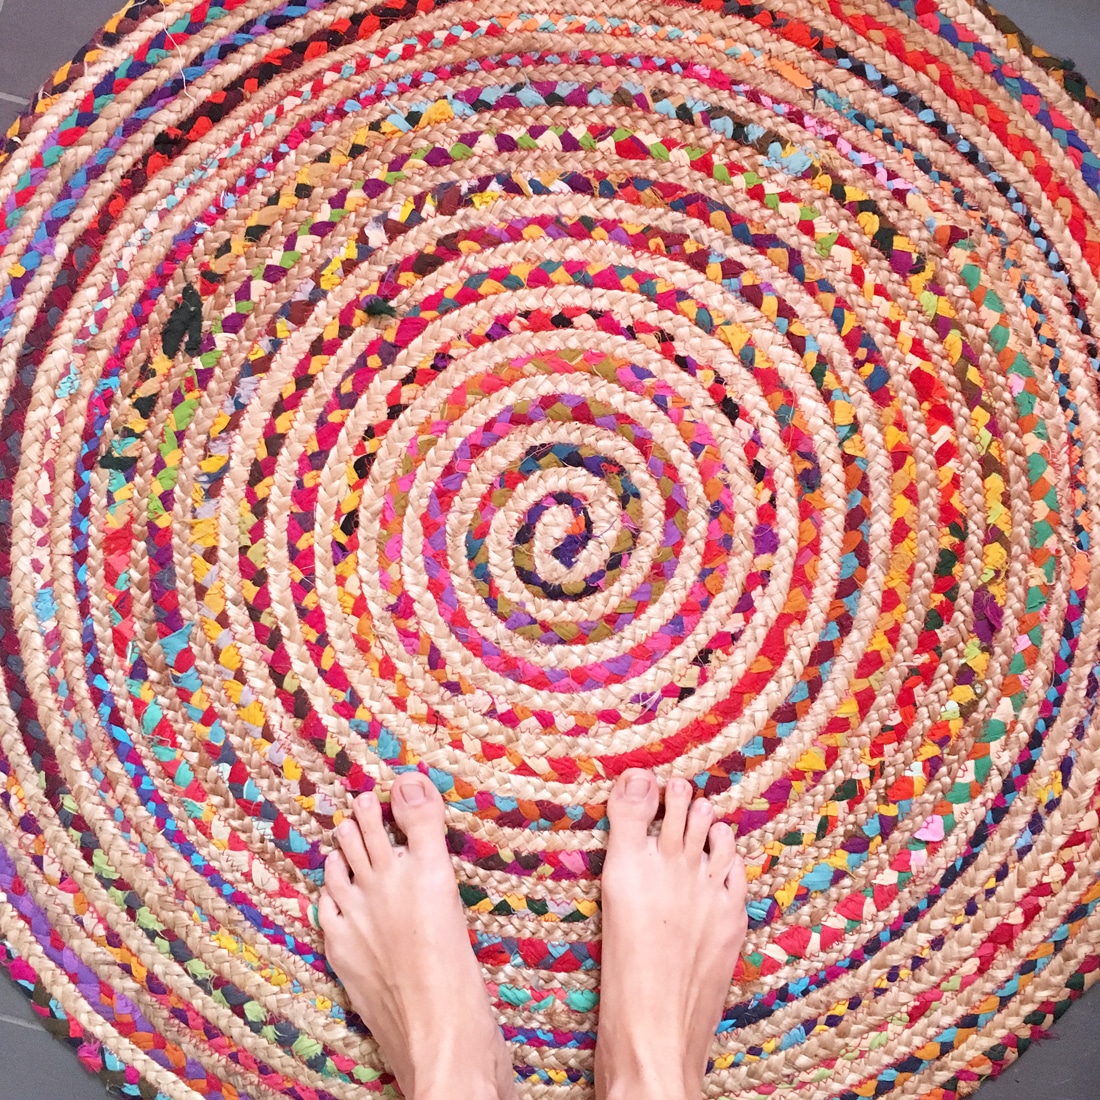 Nackte Füße auf kunterbuntem Teppich